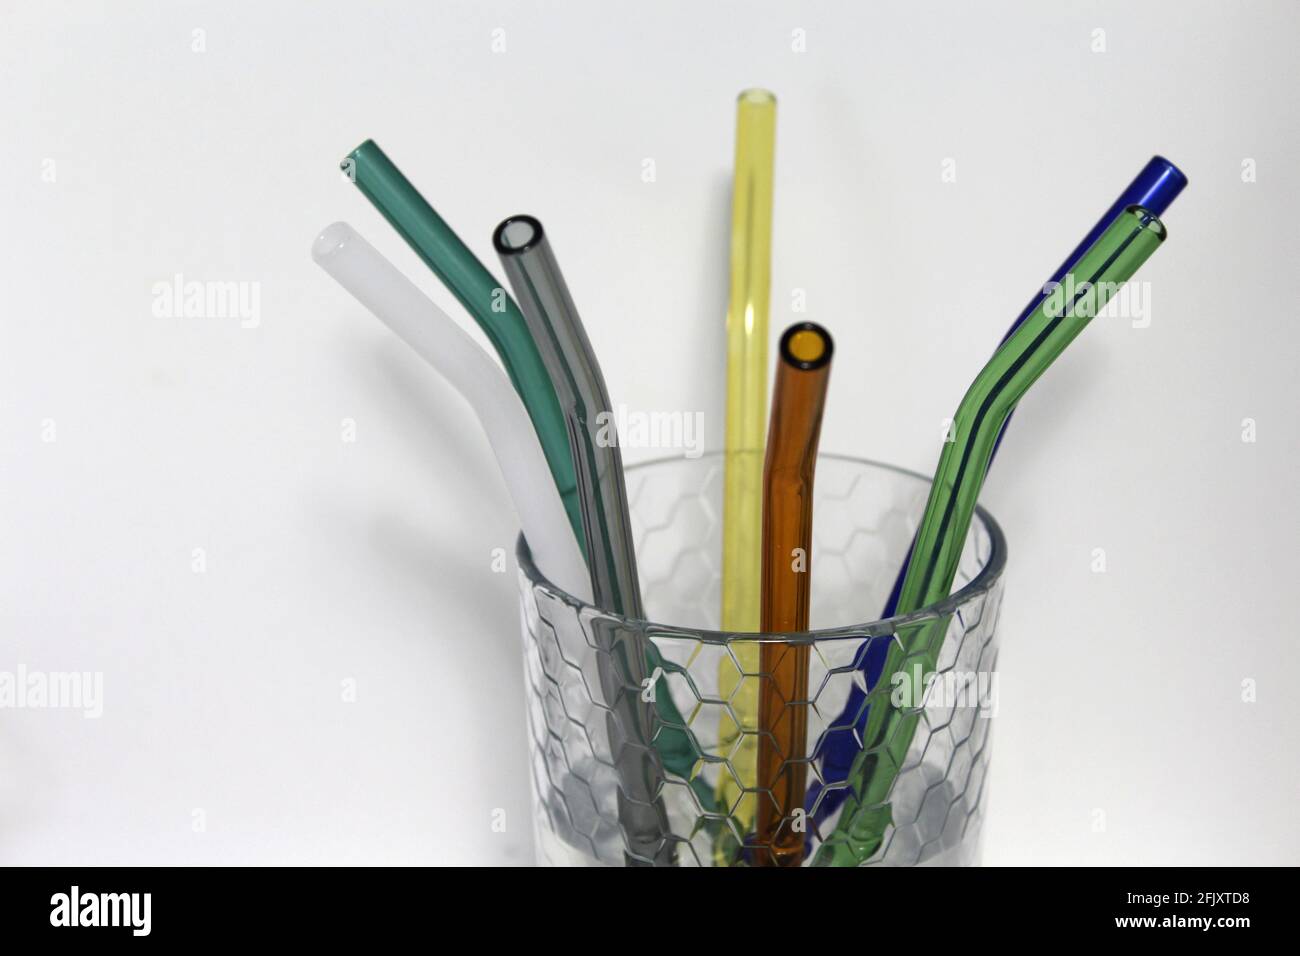 Pailles en verre coloré réutilisables dans une tasse en verre transparent. Une alternative pour remplacer la paille à boire en plastique jetable classique, idéale pour l'environnement Banque D'Images